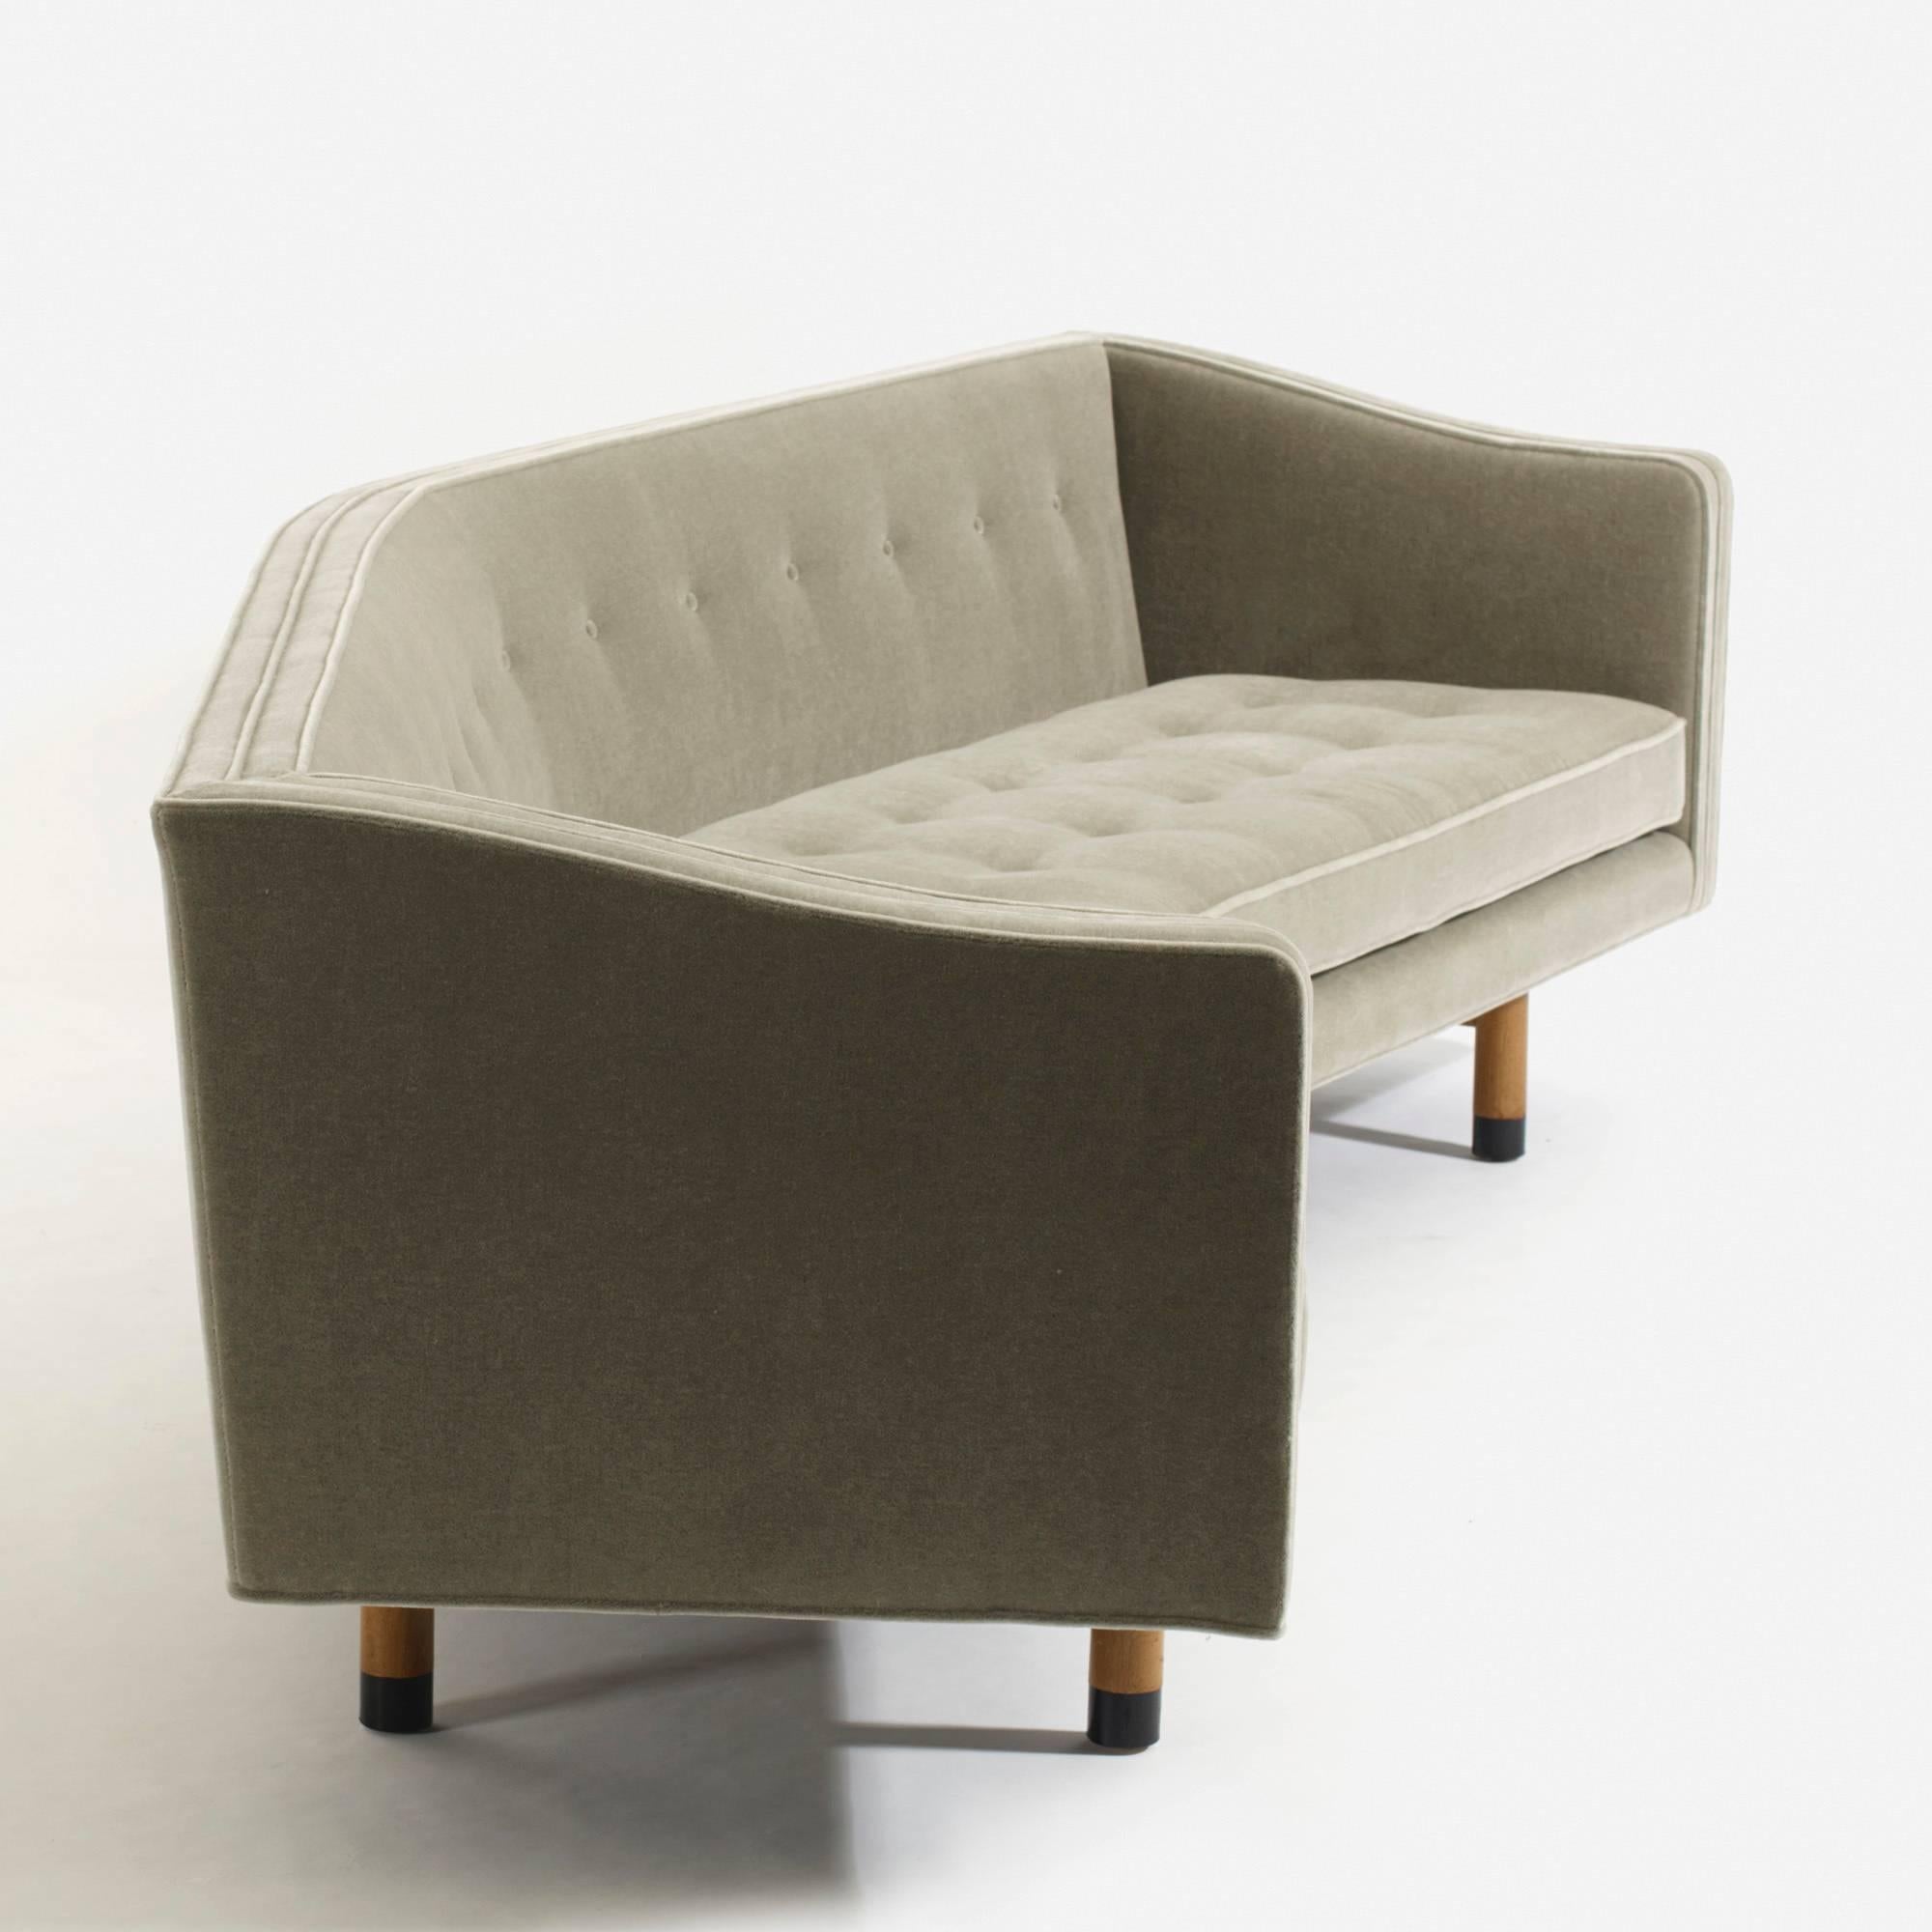 Bleached Sofa, Model 5305 by Edward Wormley for Dunbar